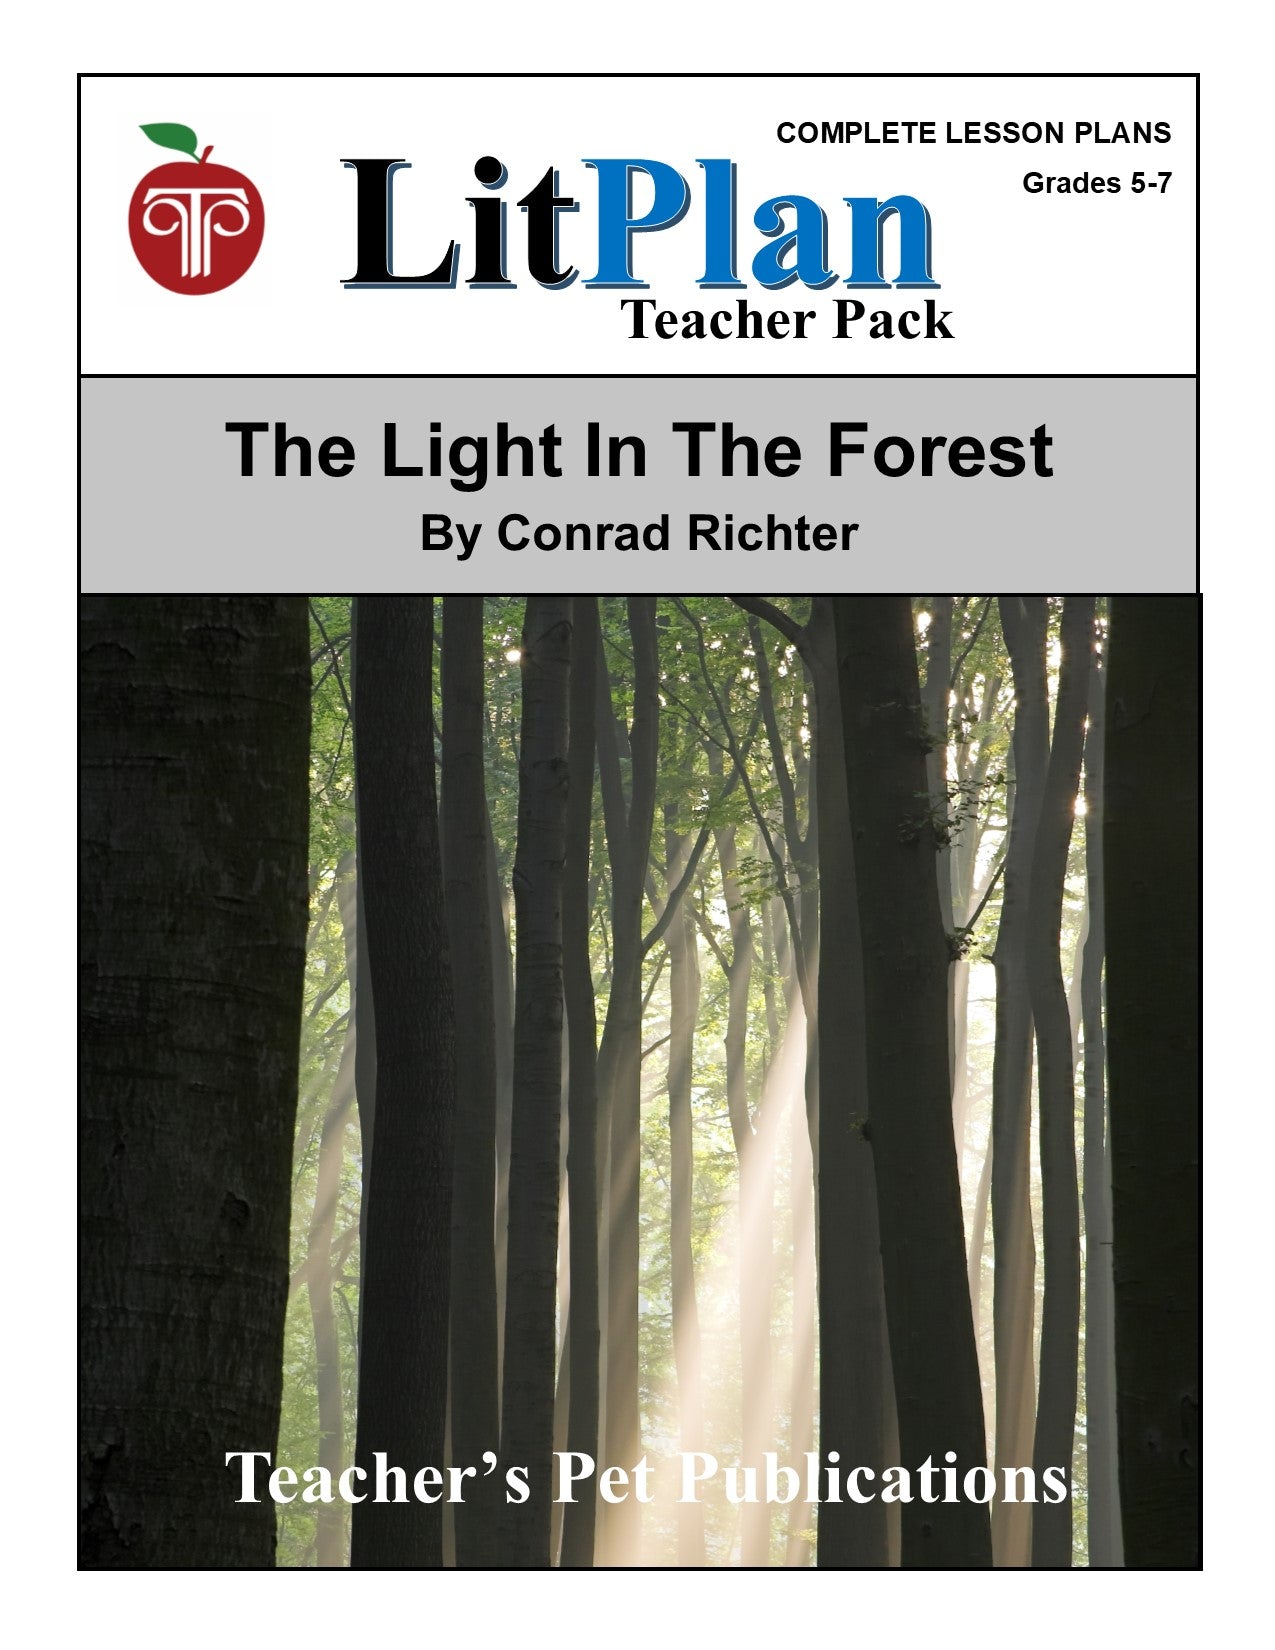 The Light in the Forest: LitPlan Teacher Pack Grades 5-7